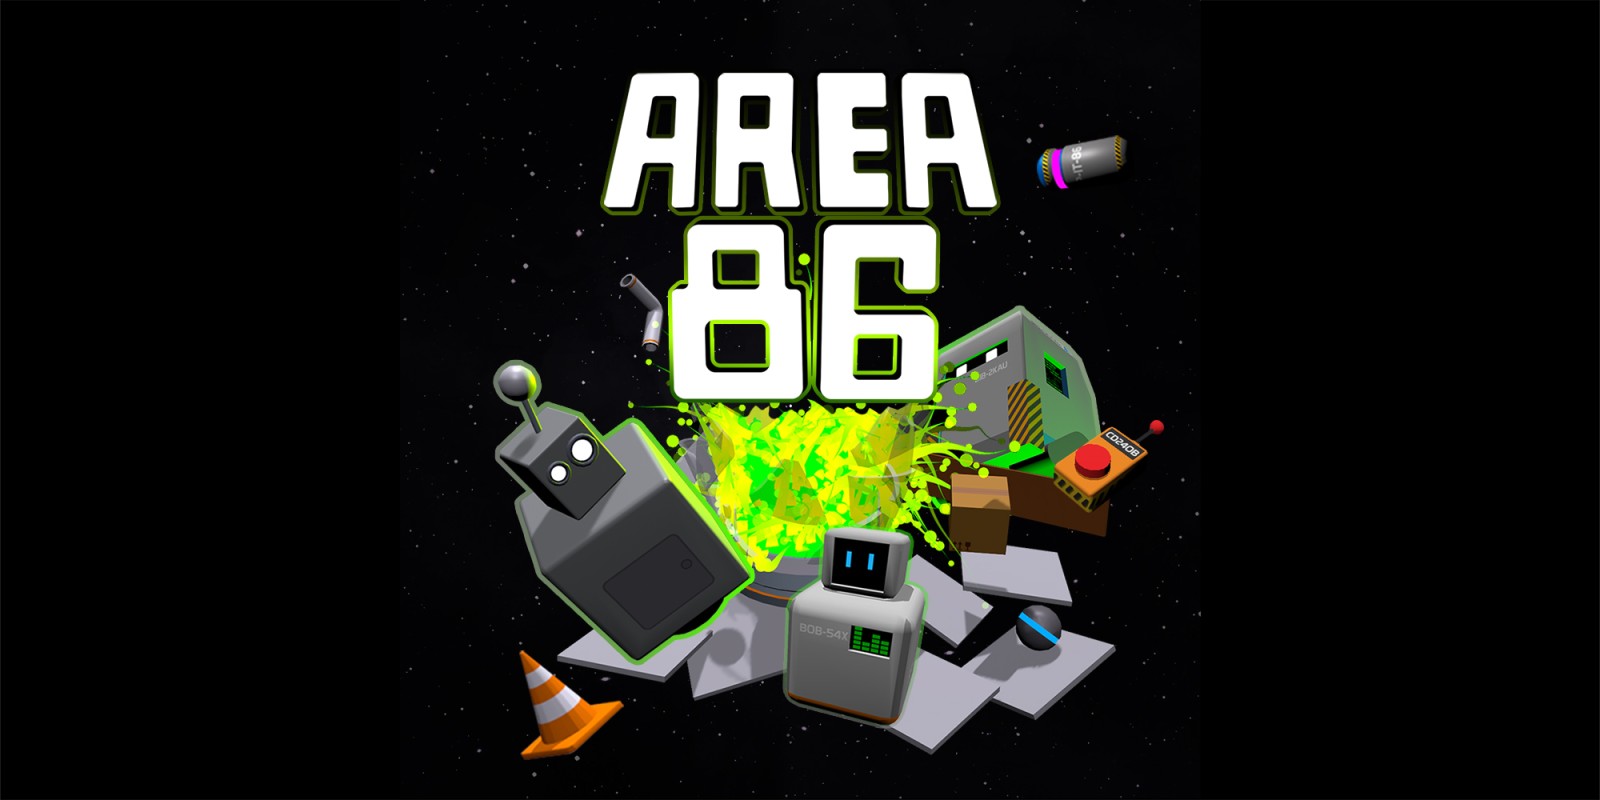 Area 86